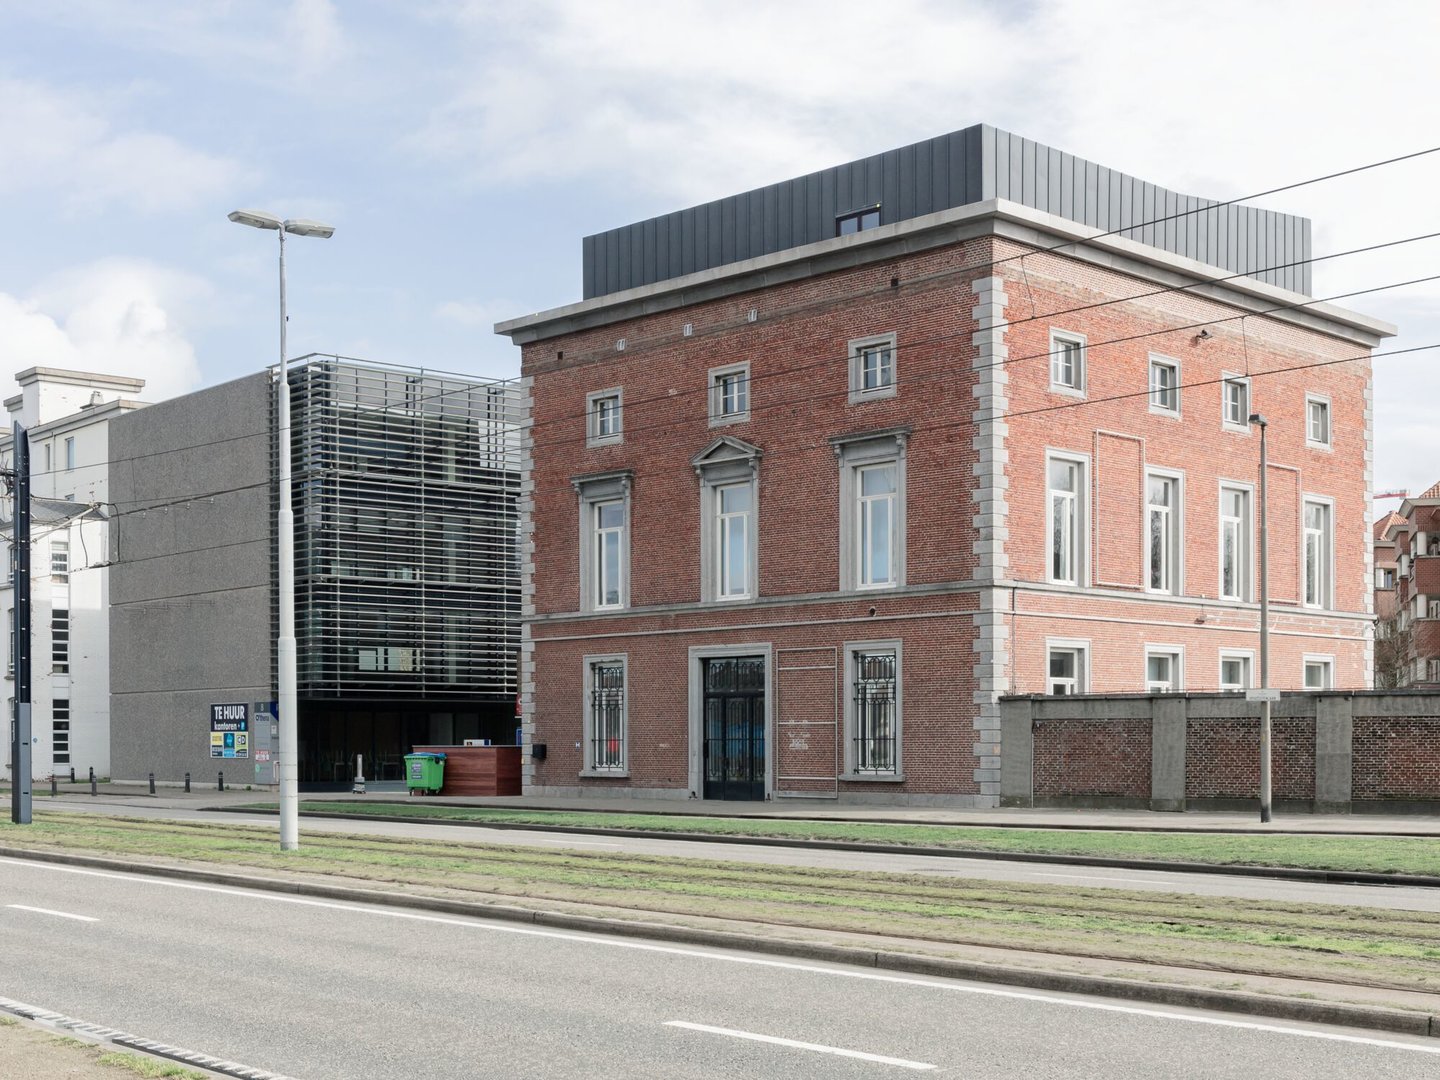 Buitenzicht van voormalige directeurswoning textielfabriek UCO de Hemptinne in Gent